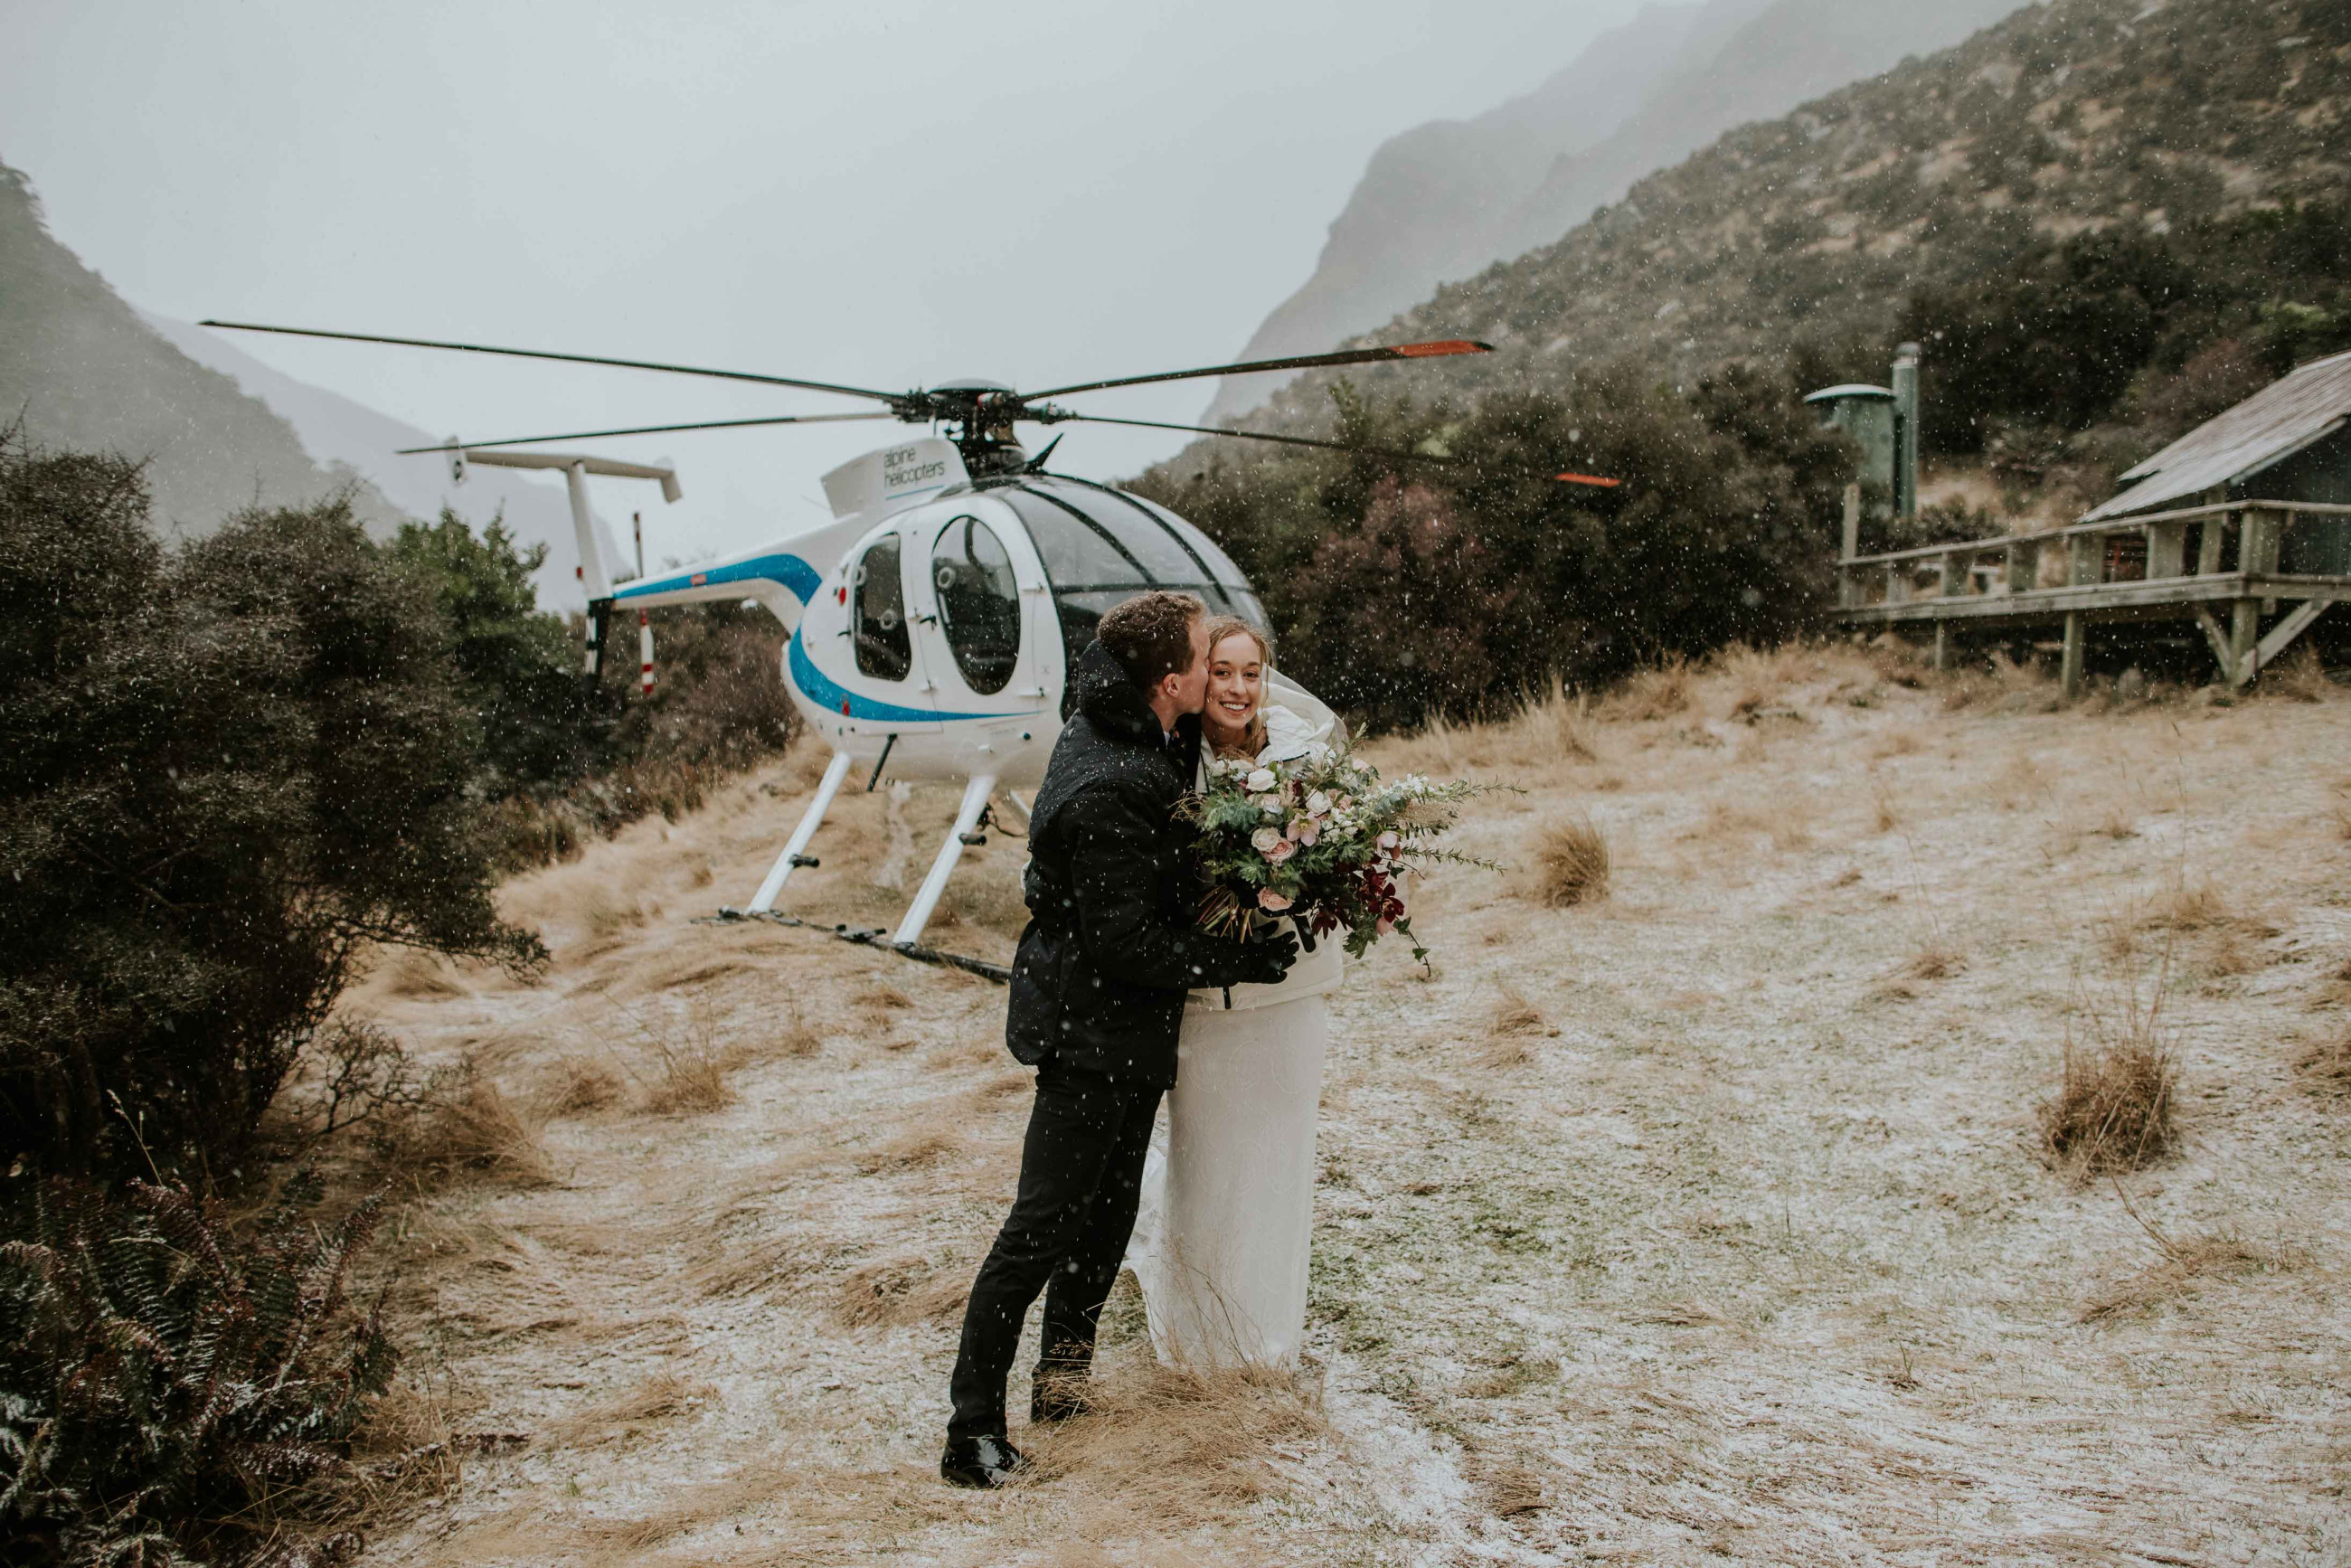 A couple enjoying their mountain wedding photoshoot